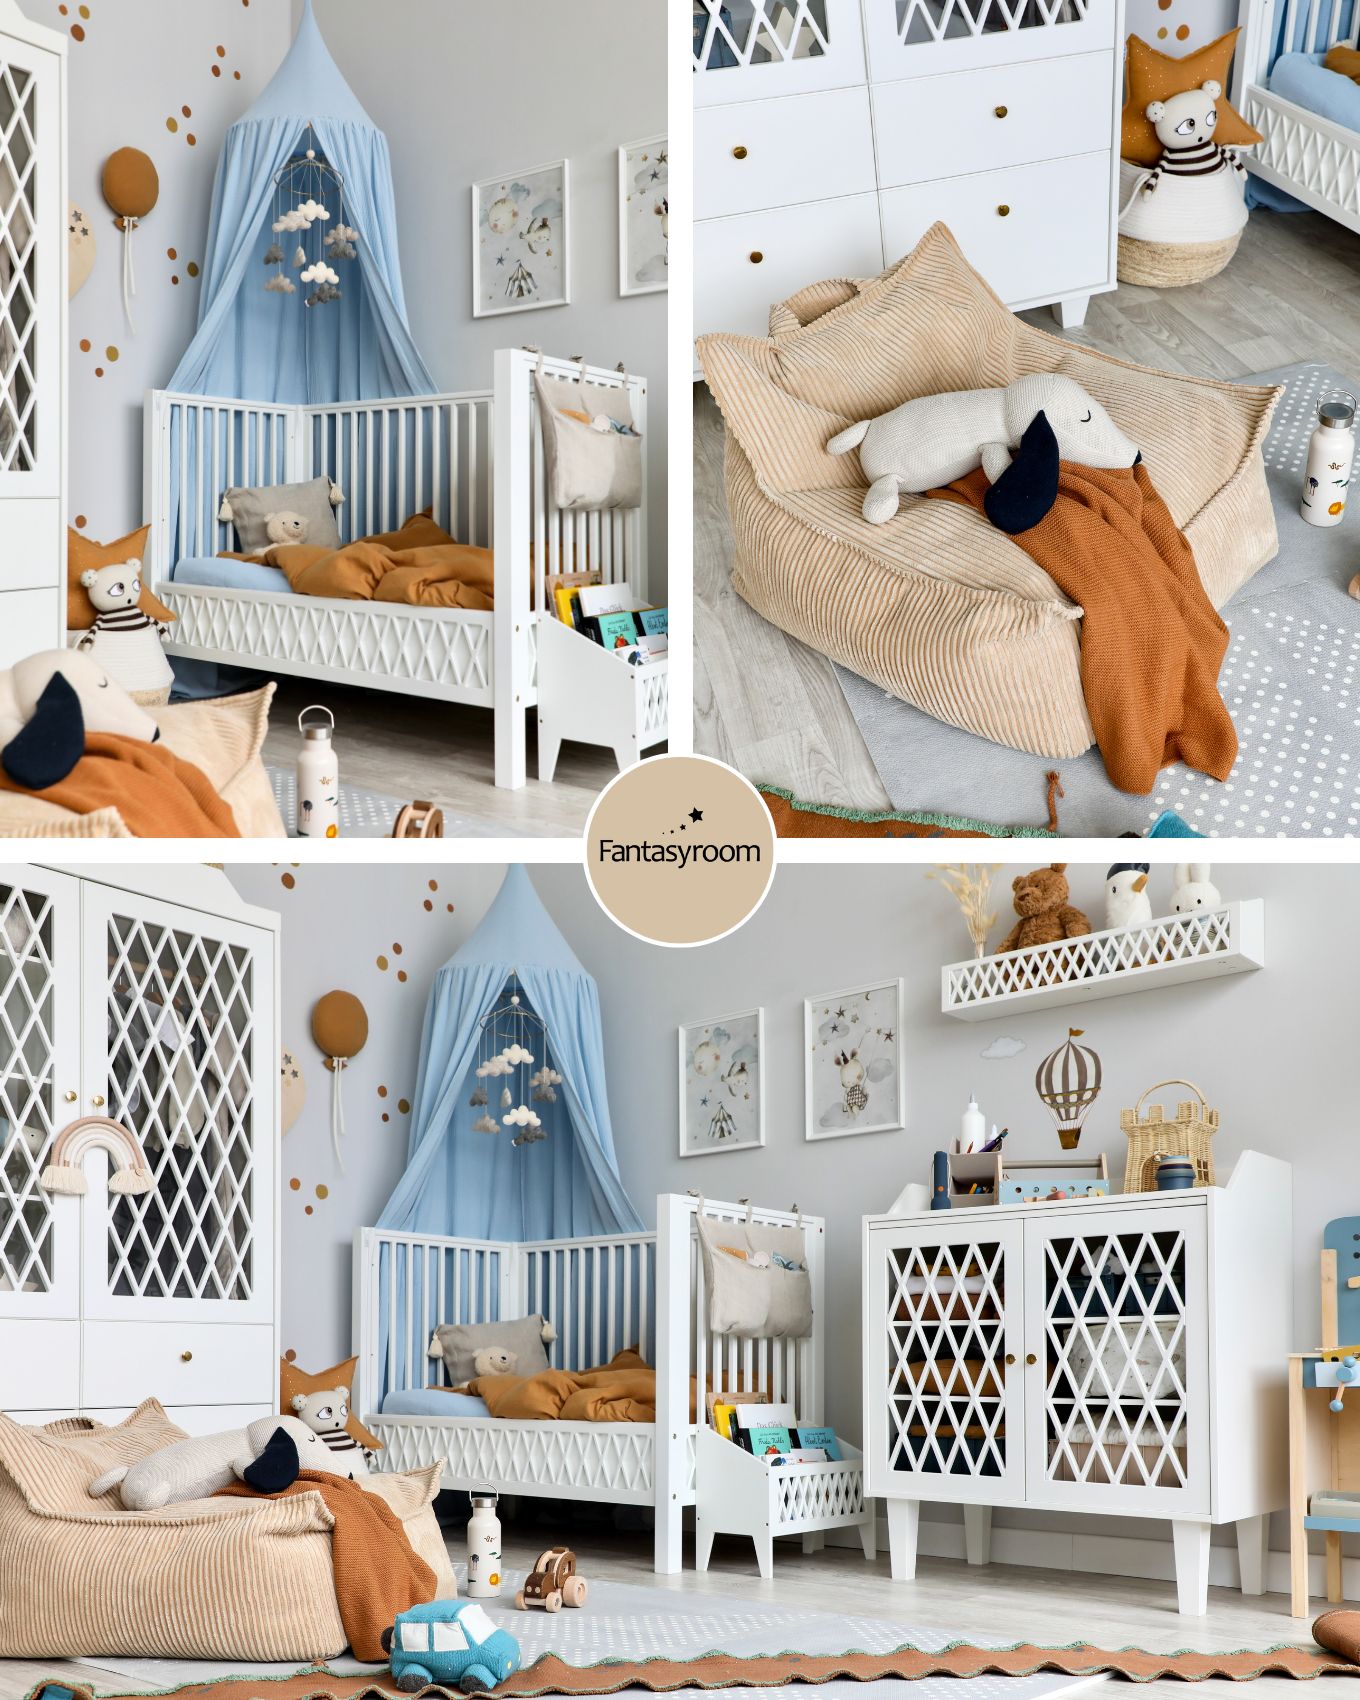 Kinderzimmer in Hellblau, Camel und Grau mit weißen Möbeln, Spielzeug und Sitzsack